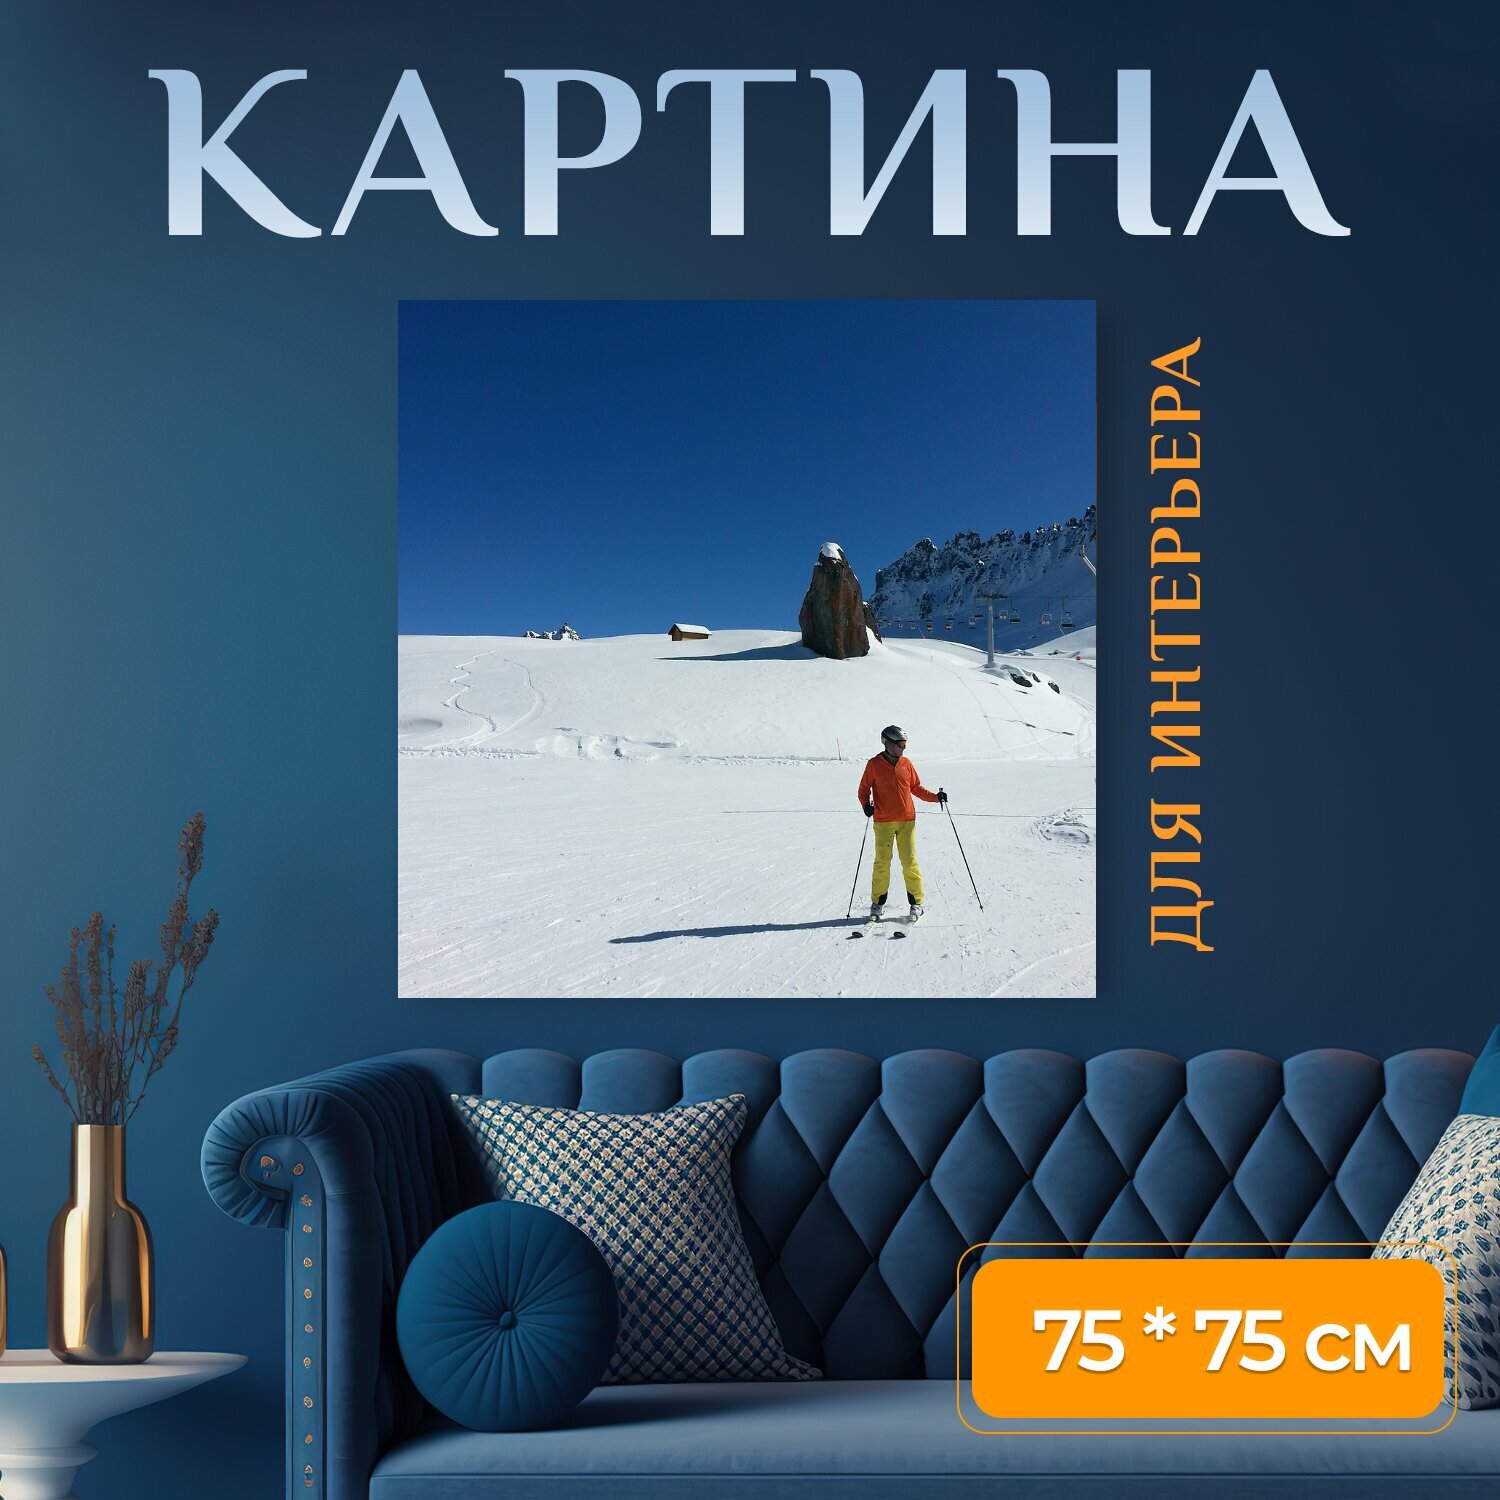 Картина на холсте "Солнце, снег, кататься на лыжах" на подрамнике 75х75 см. для интерьера